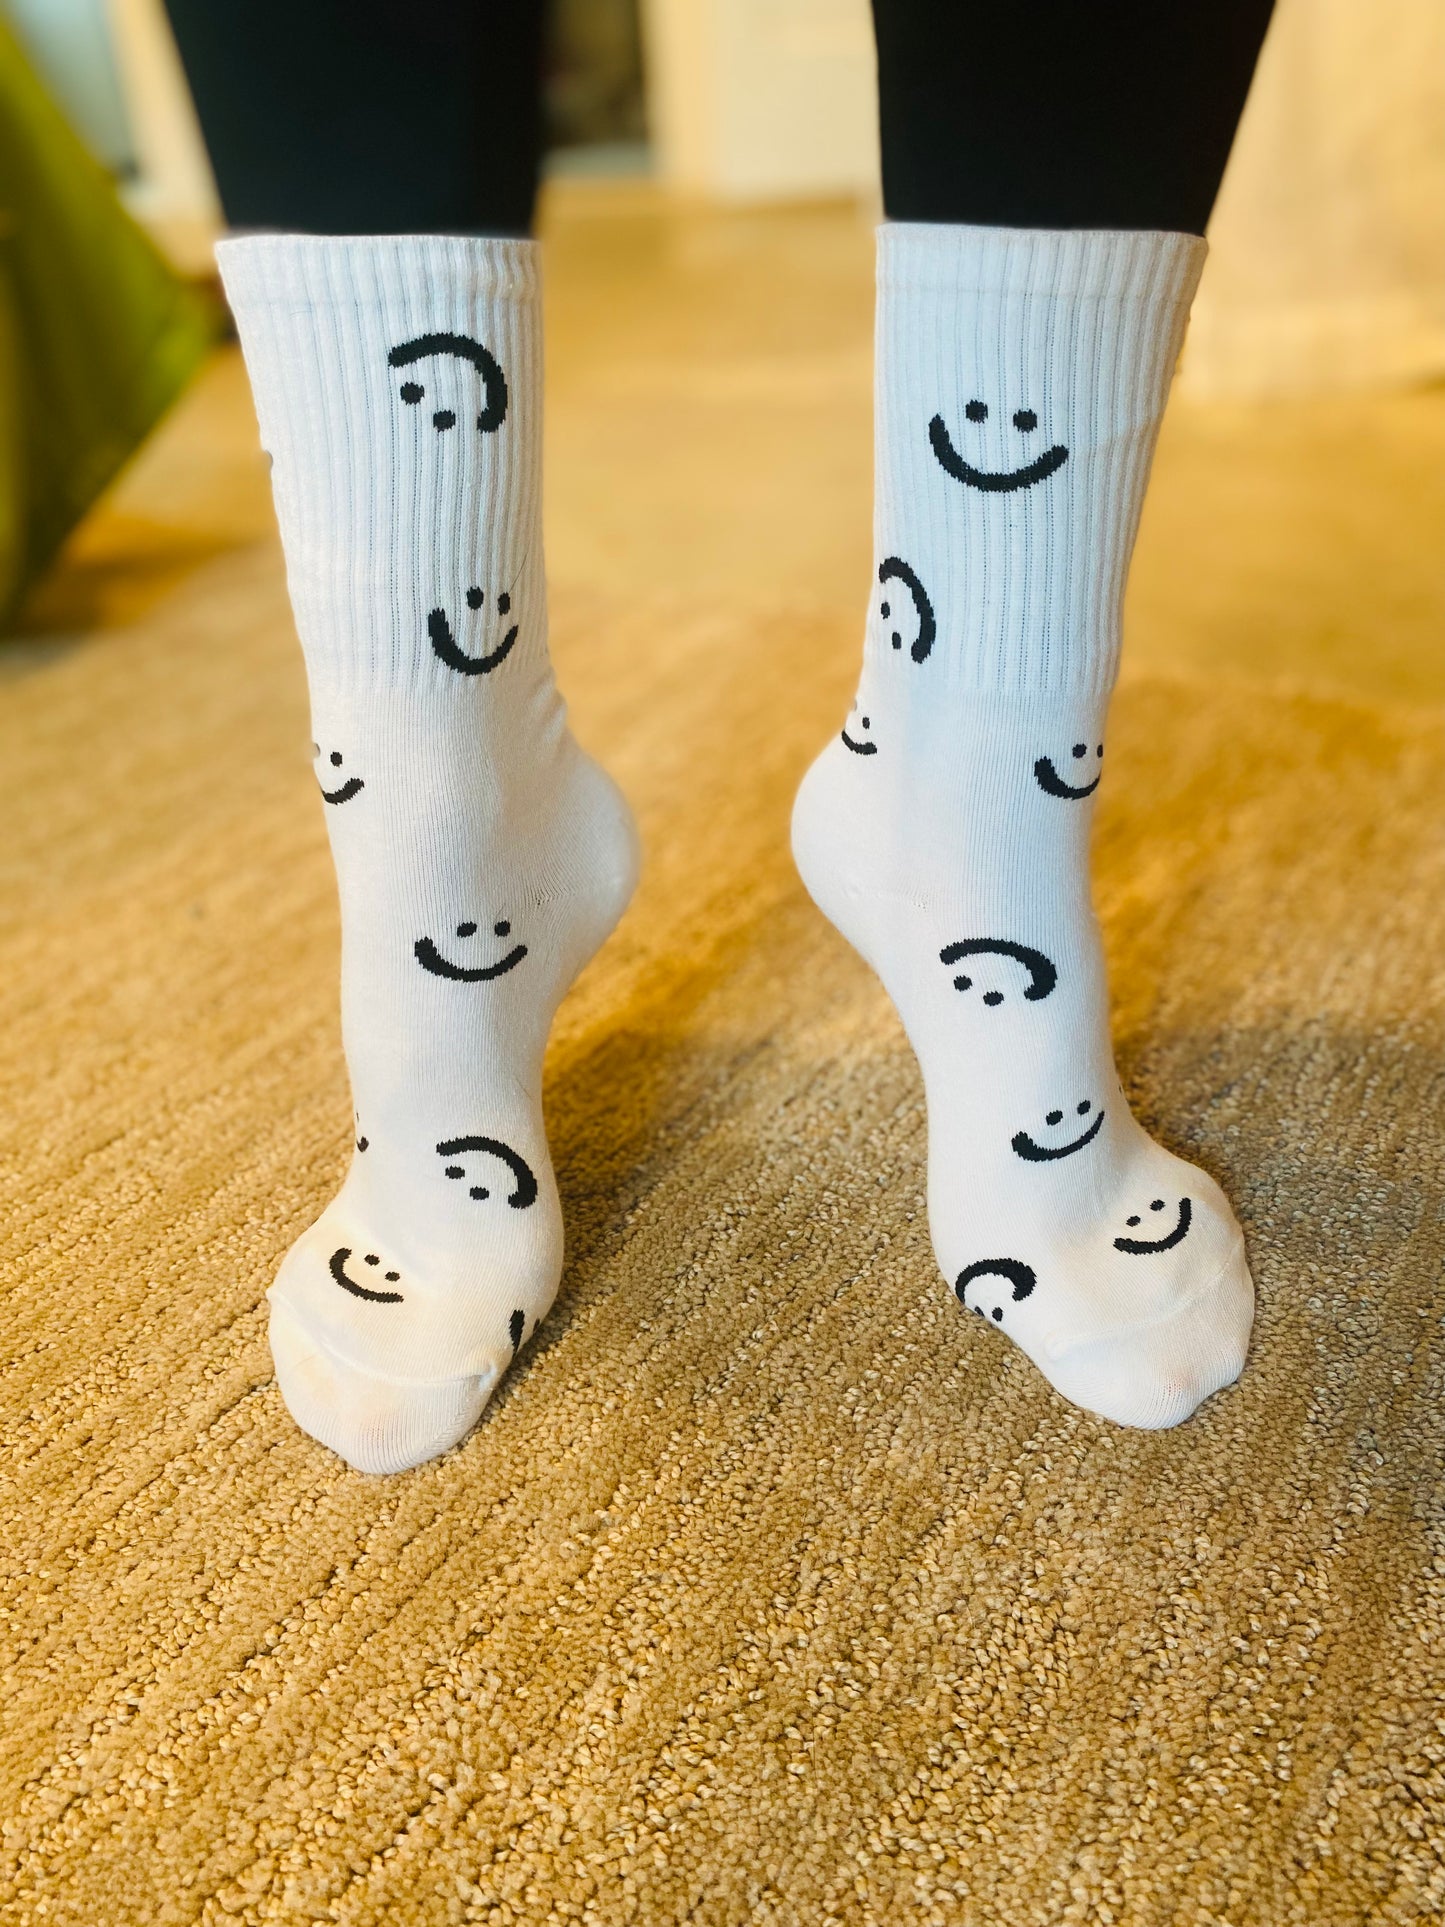 Smiley face crew socks